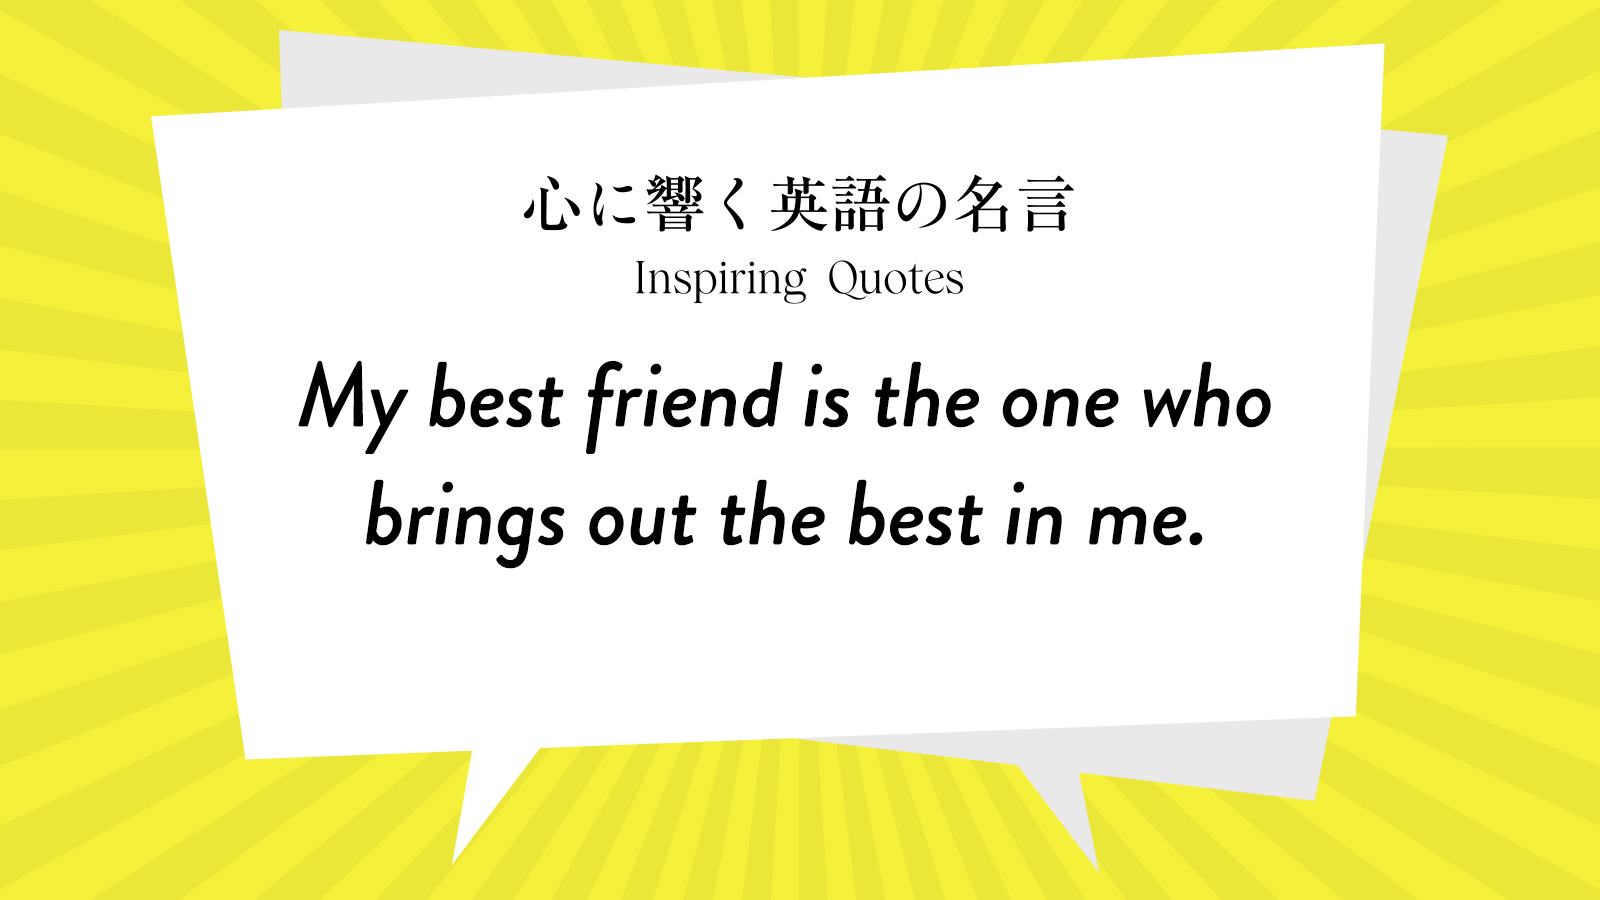 今週の名言 “My best friend is the one who brings out the best in me.” | Inspiring Quotes: 心に響く英語の名言